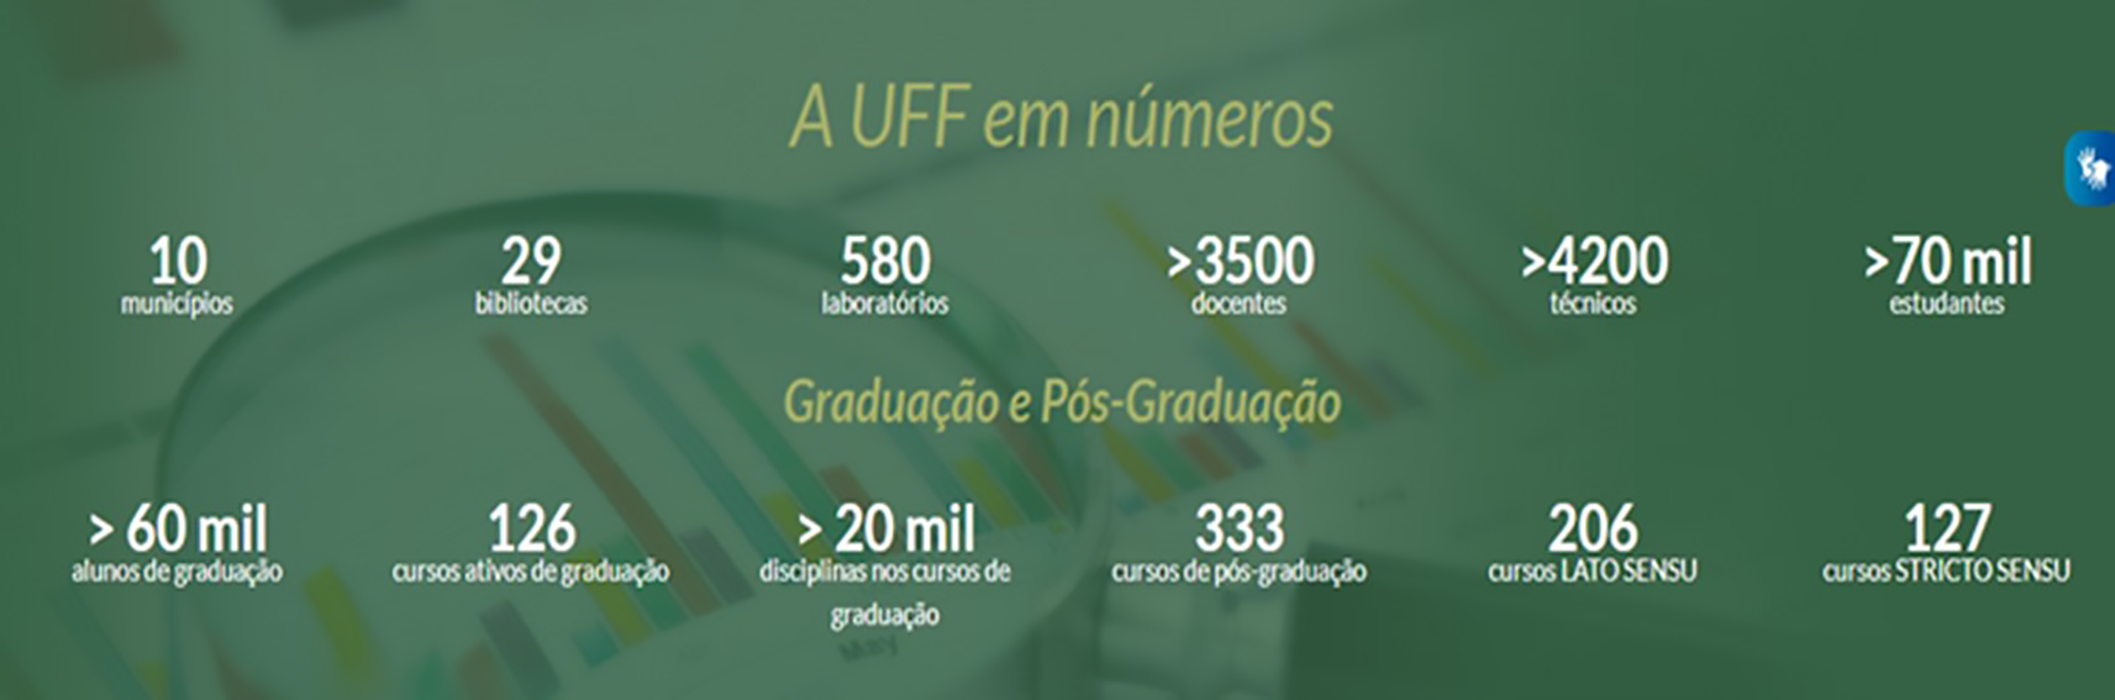 UFF em números